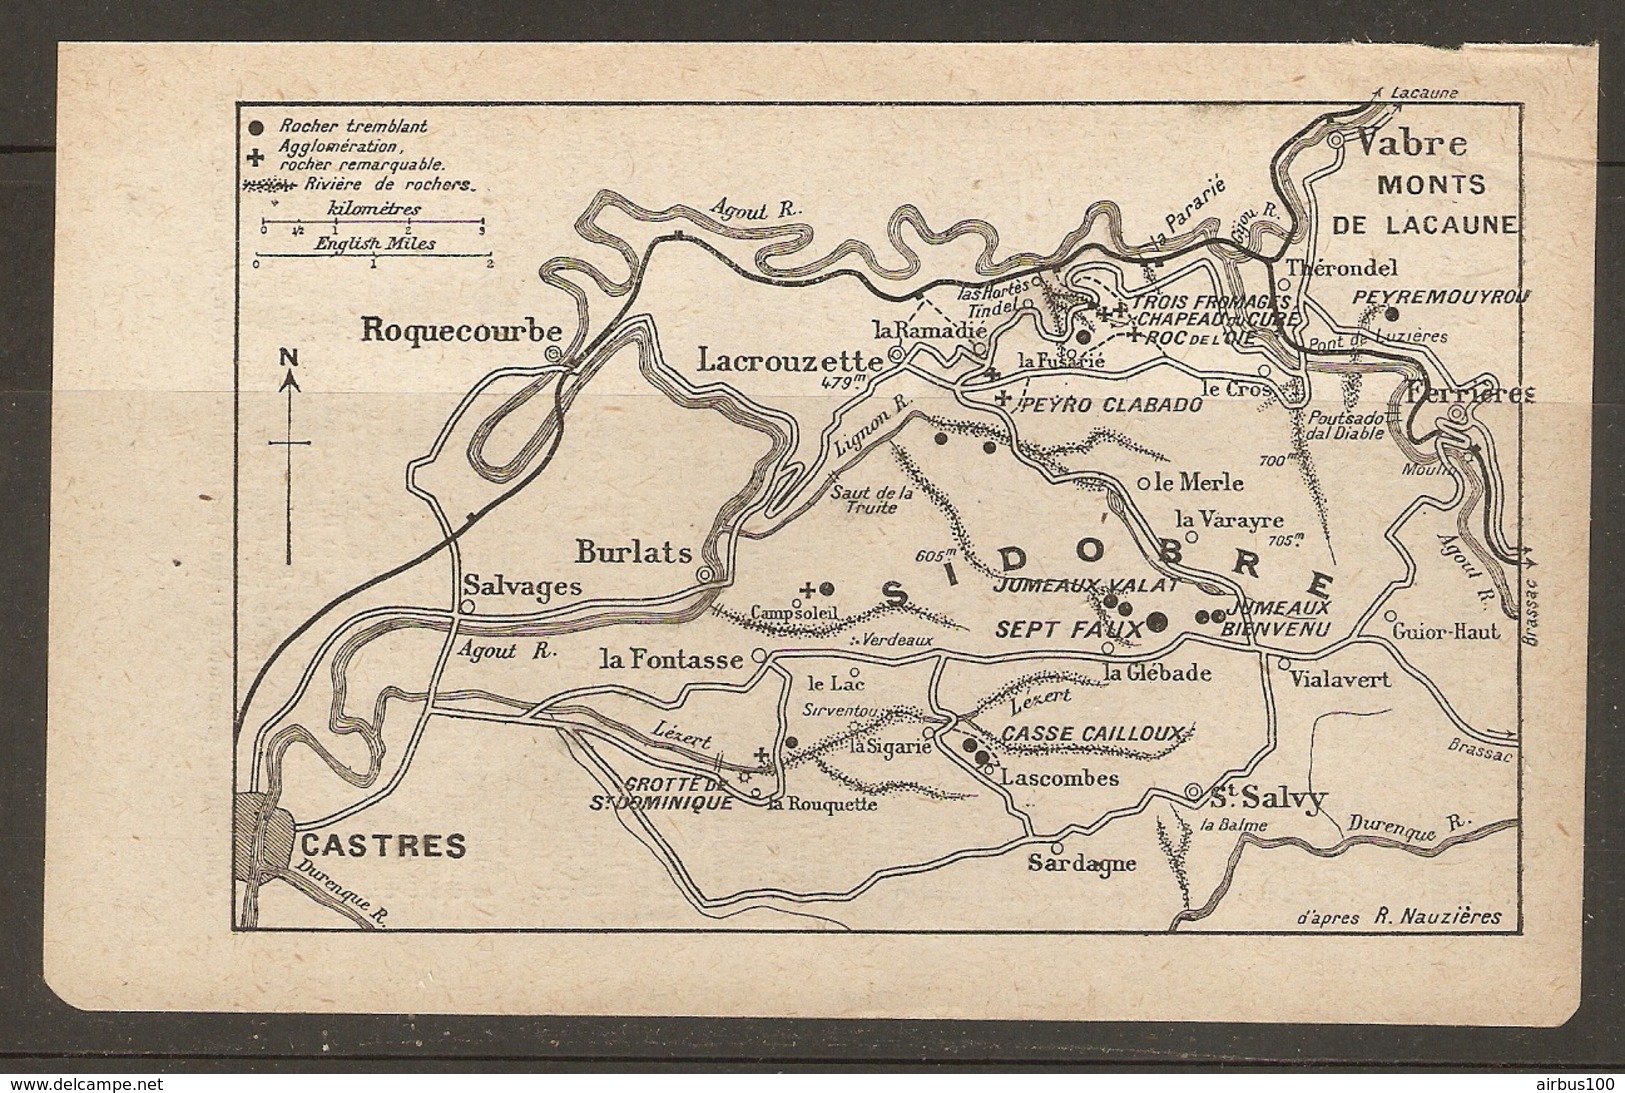 CARTE PLAN 1921 - ROCHERS TREMBLANTS - SIDOBRE LACROUZETTE ROQUECOURBE St SALVY BURLATS CASSE CAILLOUX JUMEAUX VALAT - Topographical Maps